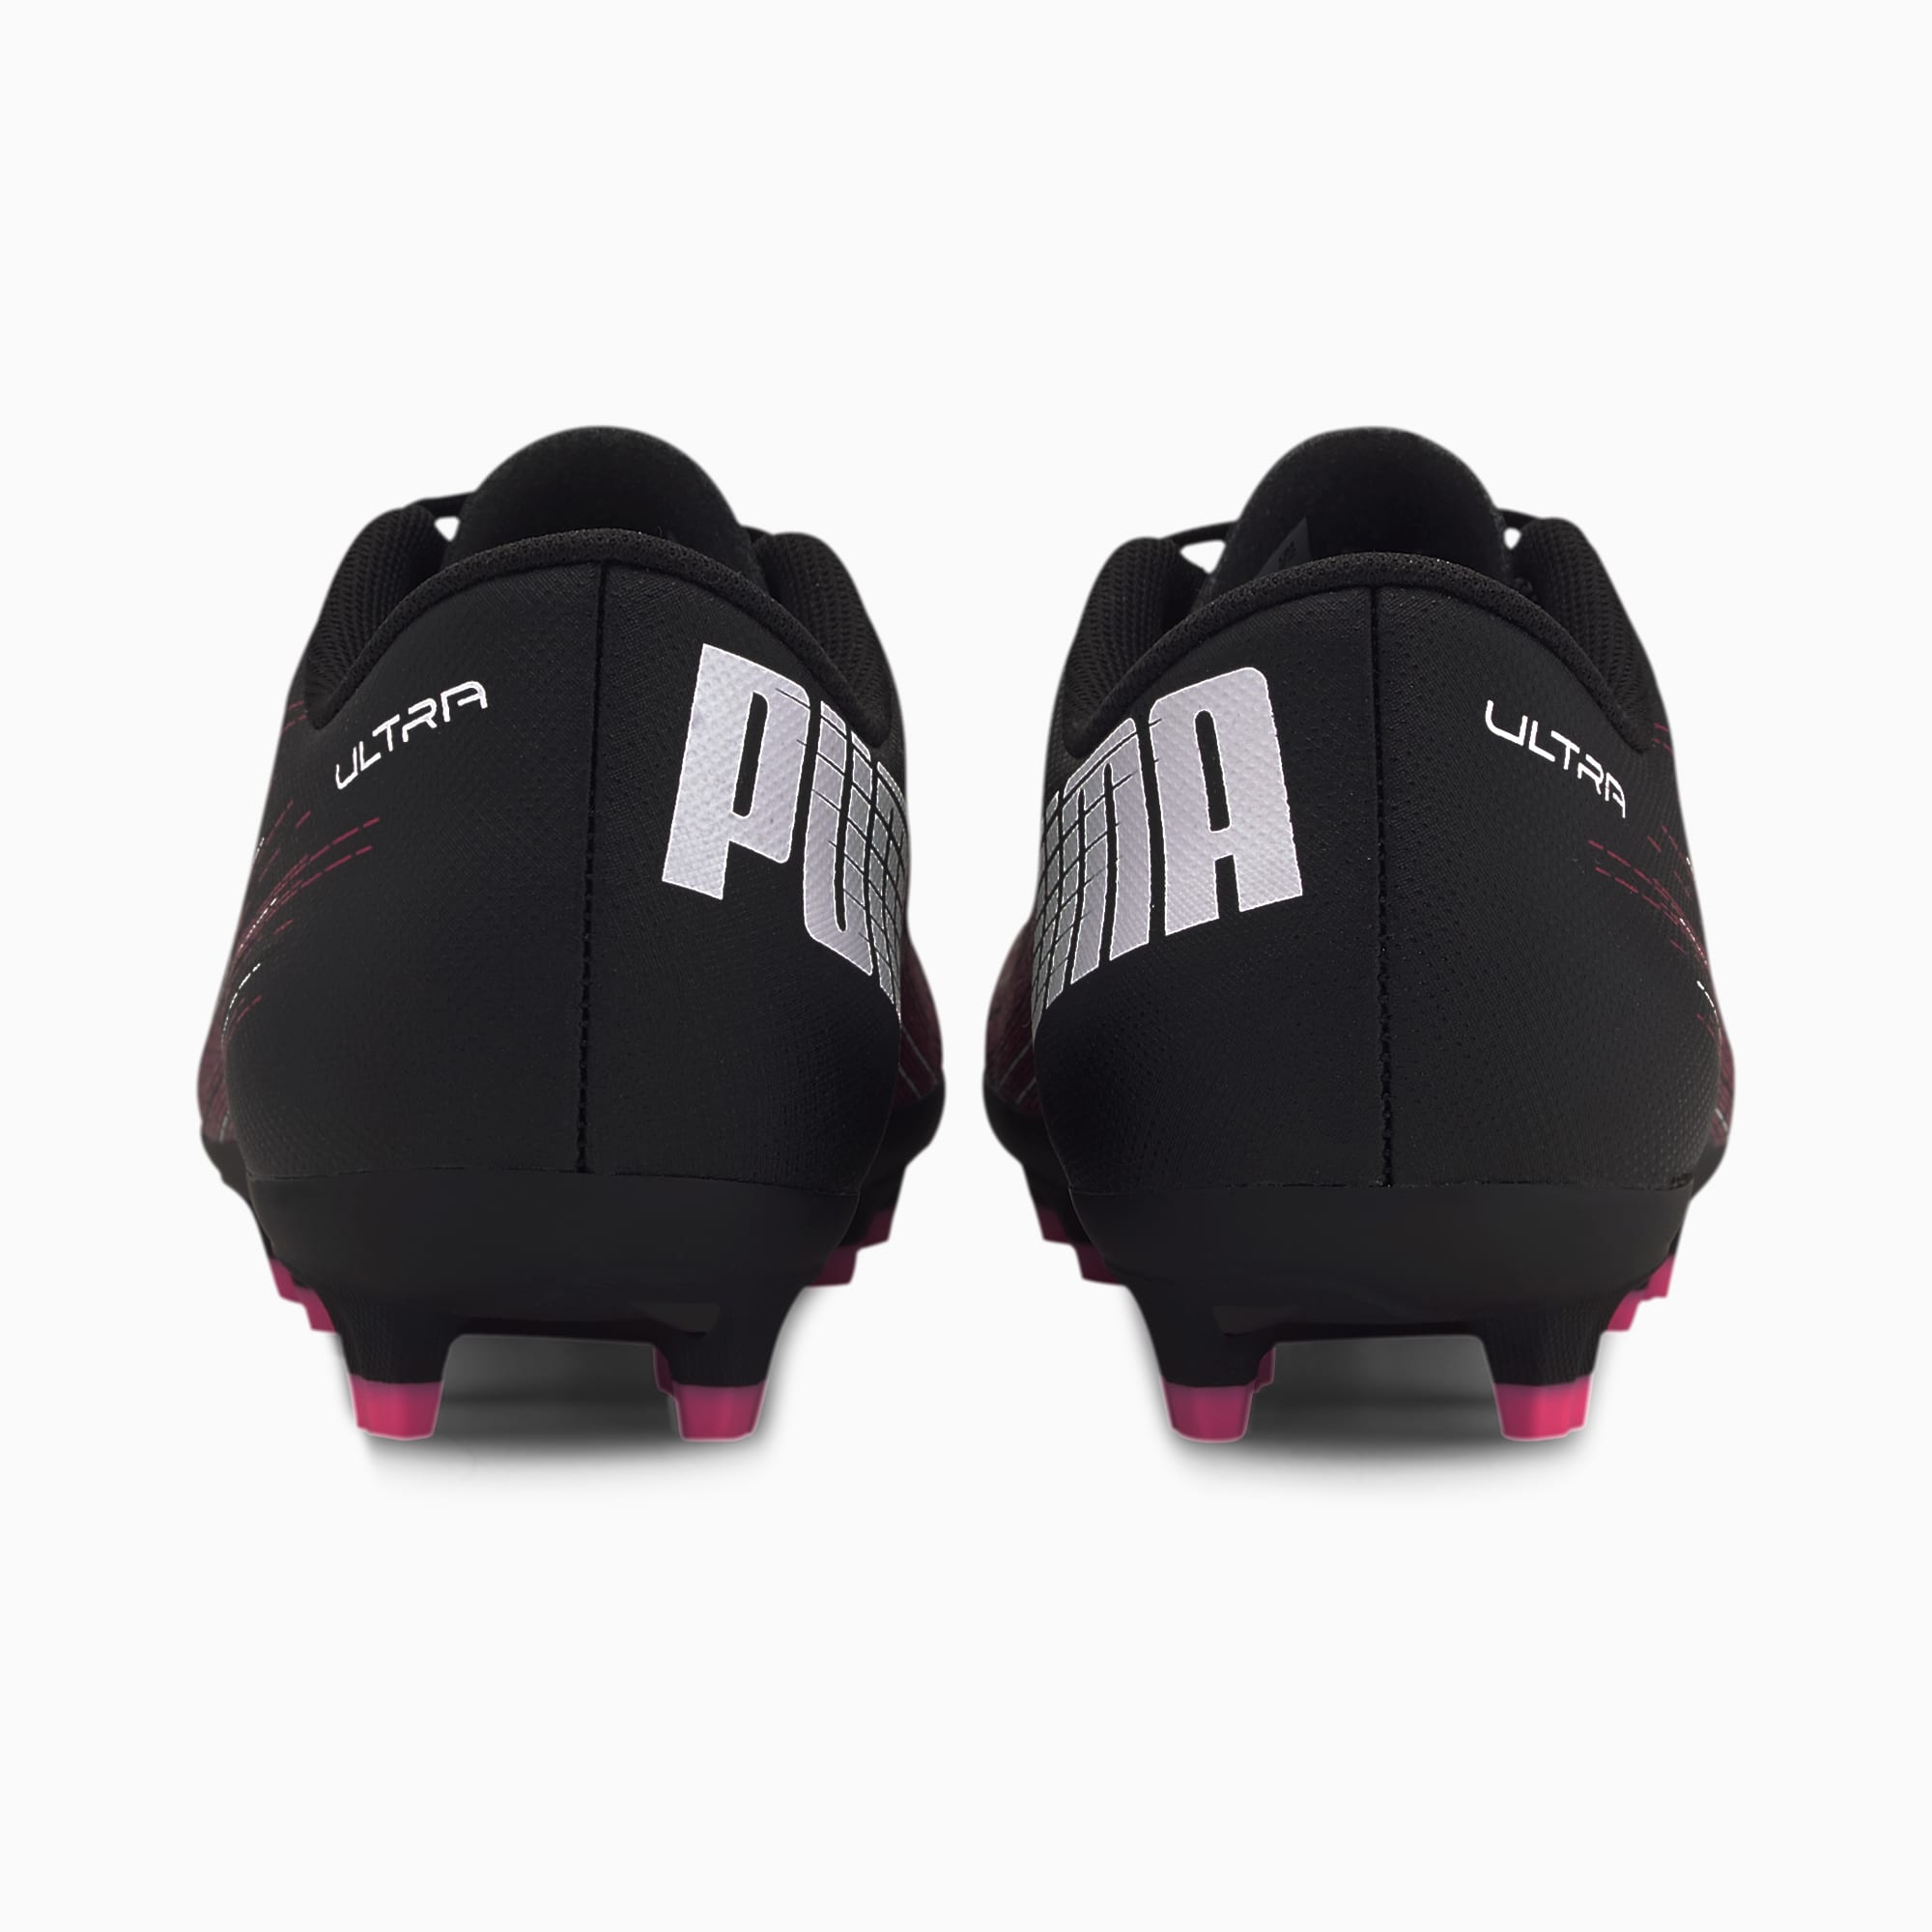 Puma公式 キッズ ウルトラ 4 1 Hg サッカー スパイク Jr 24 5cm ジュニア Black Luminous Pink White プーマ ボーイズシューズ プーマ